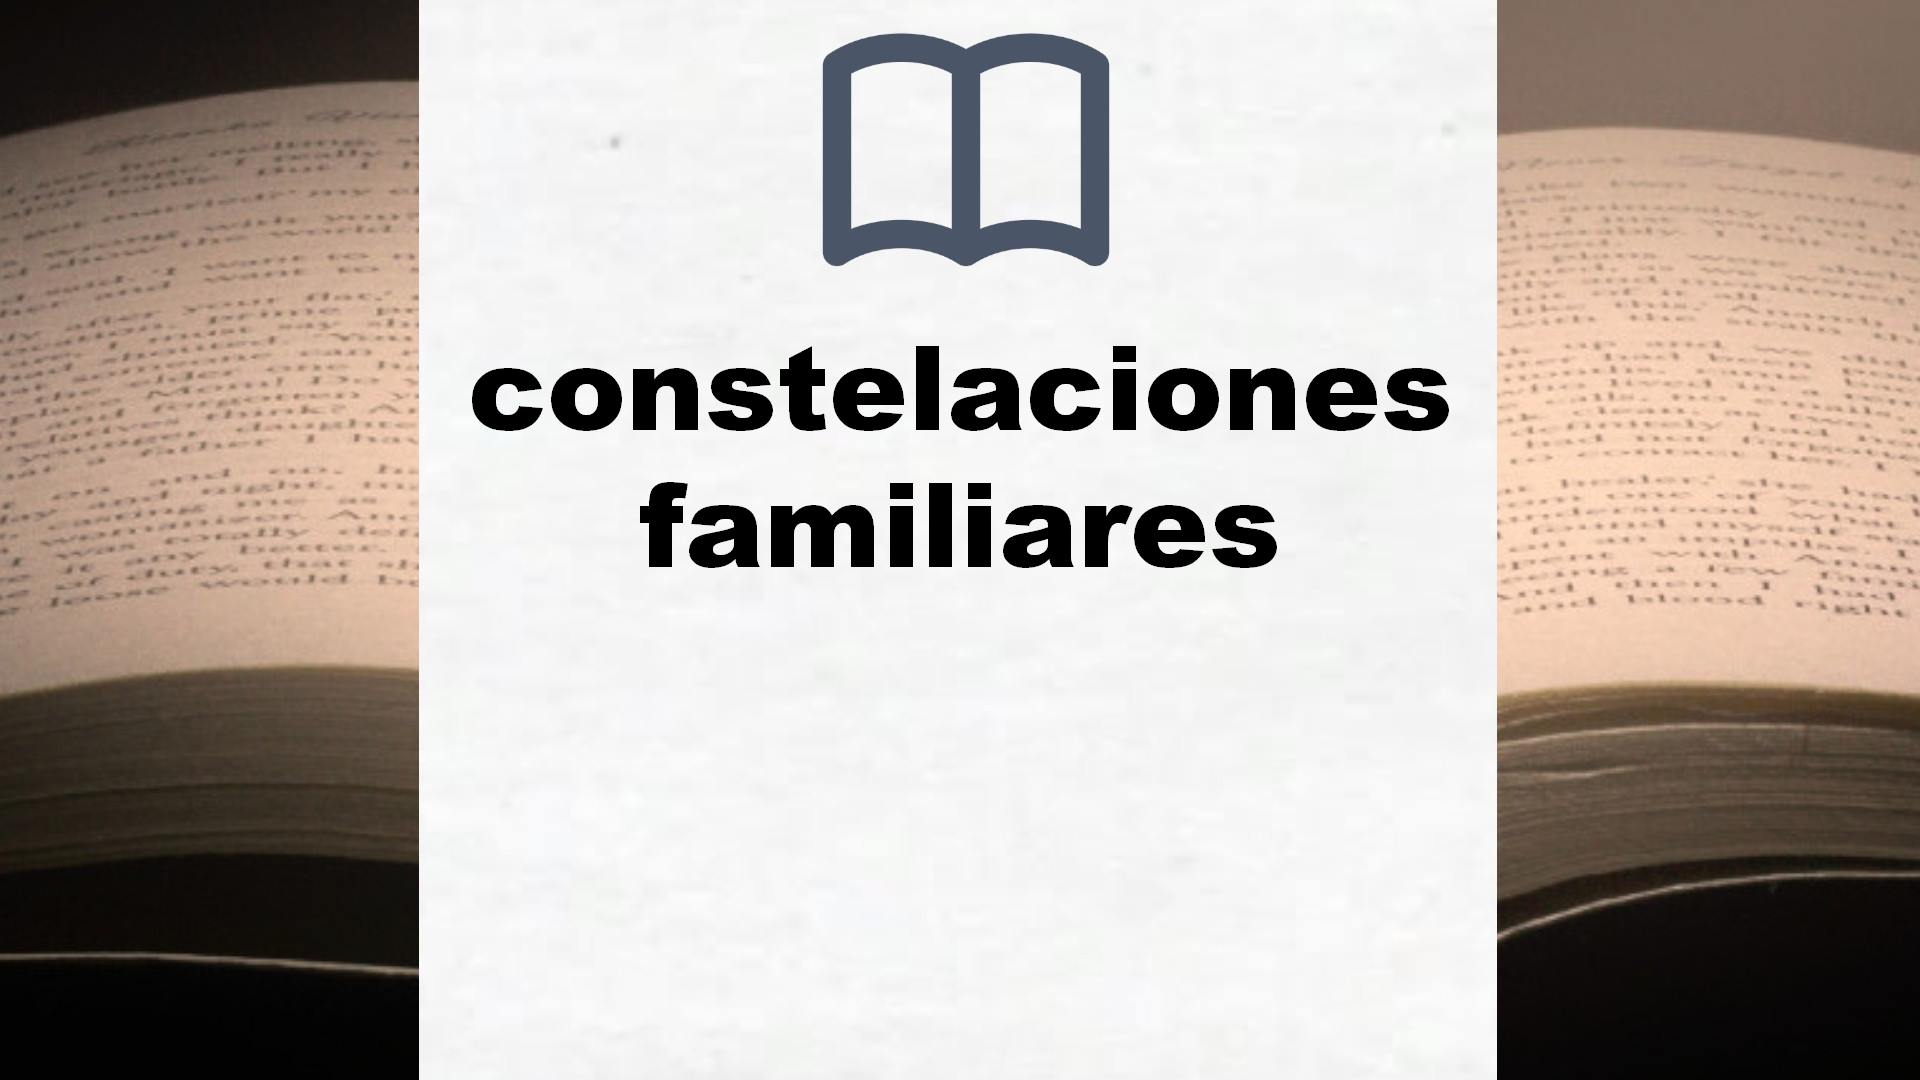 Libros sobre constelaciones familiares